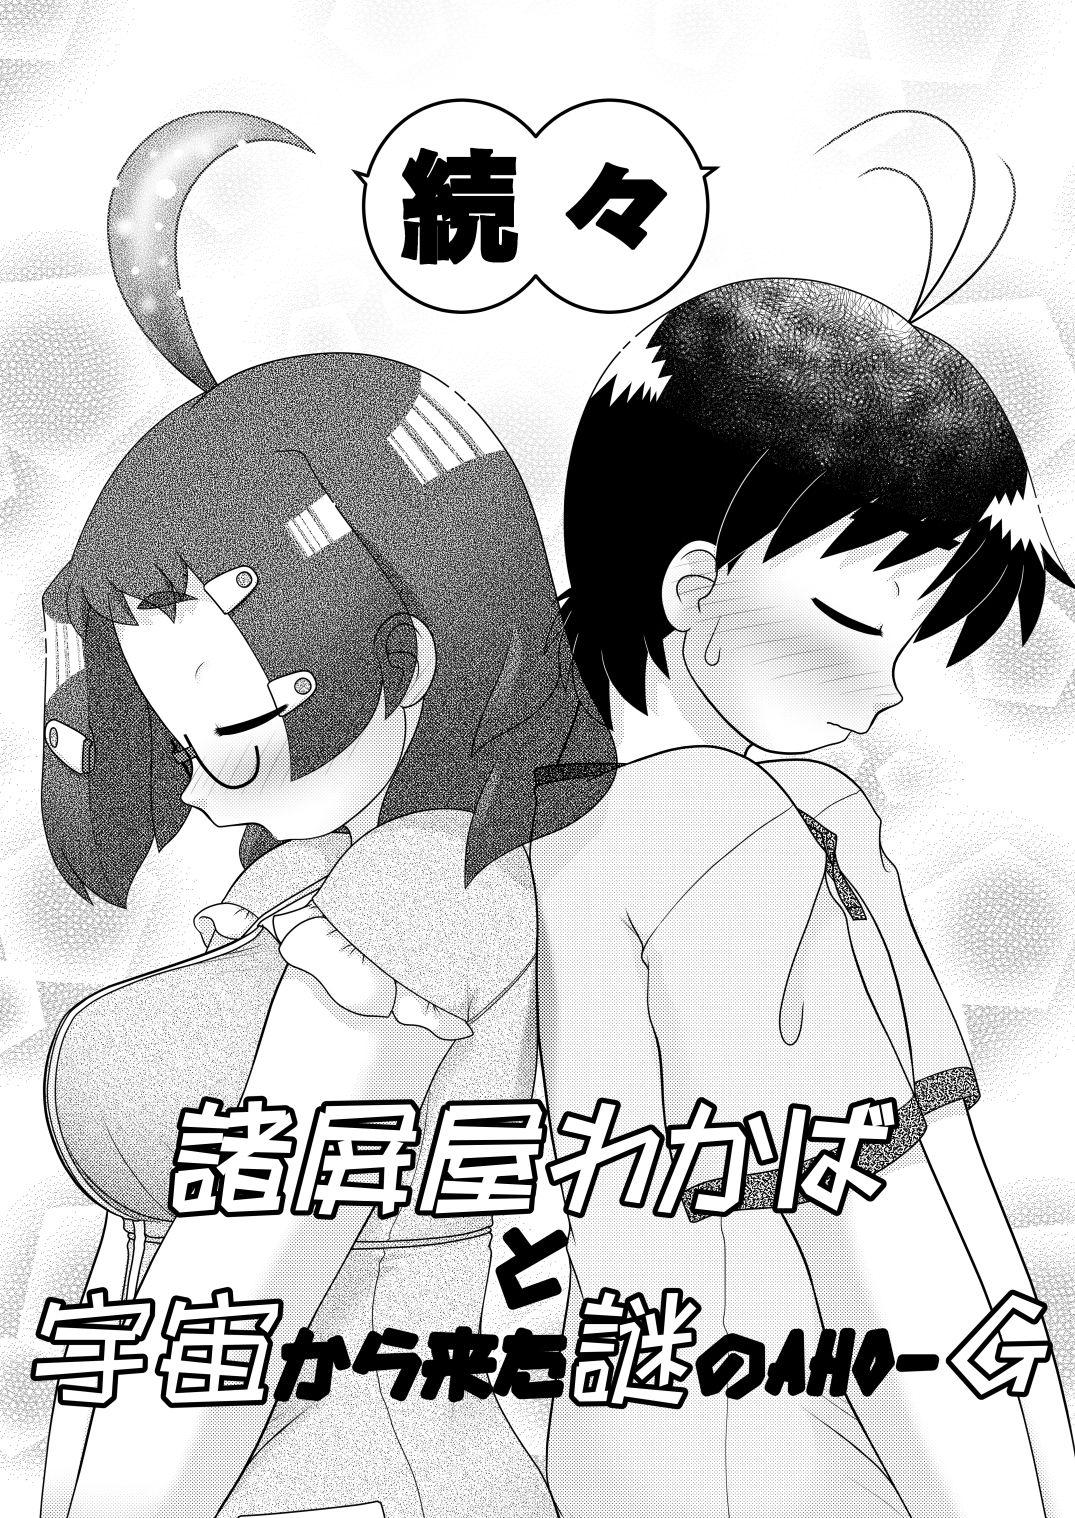 Bucetuda [Lime Right] Zokuzoku Sho Hei-ya Wakaba to Uchuu kara Kita Nazo no AHO-G - Original Softcore - Page 4